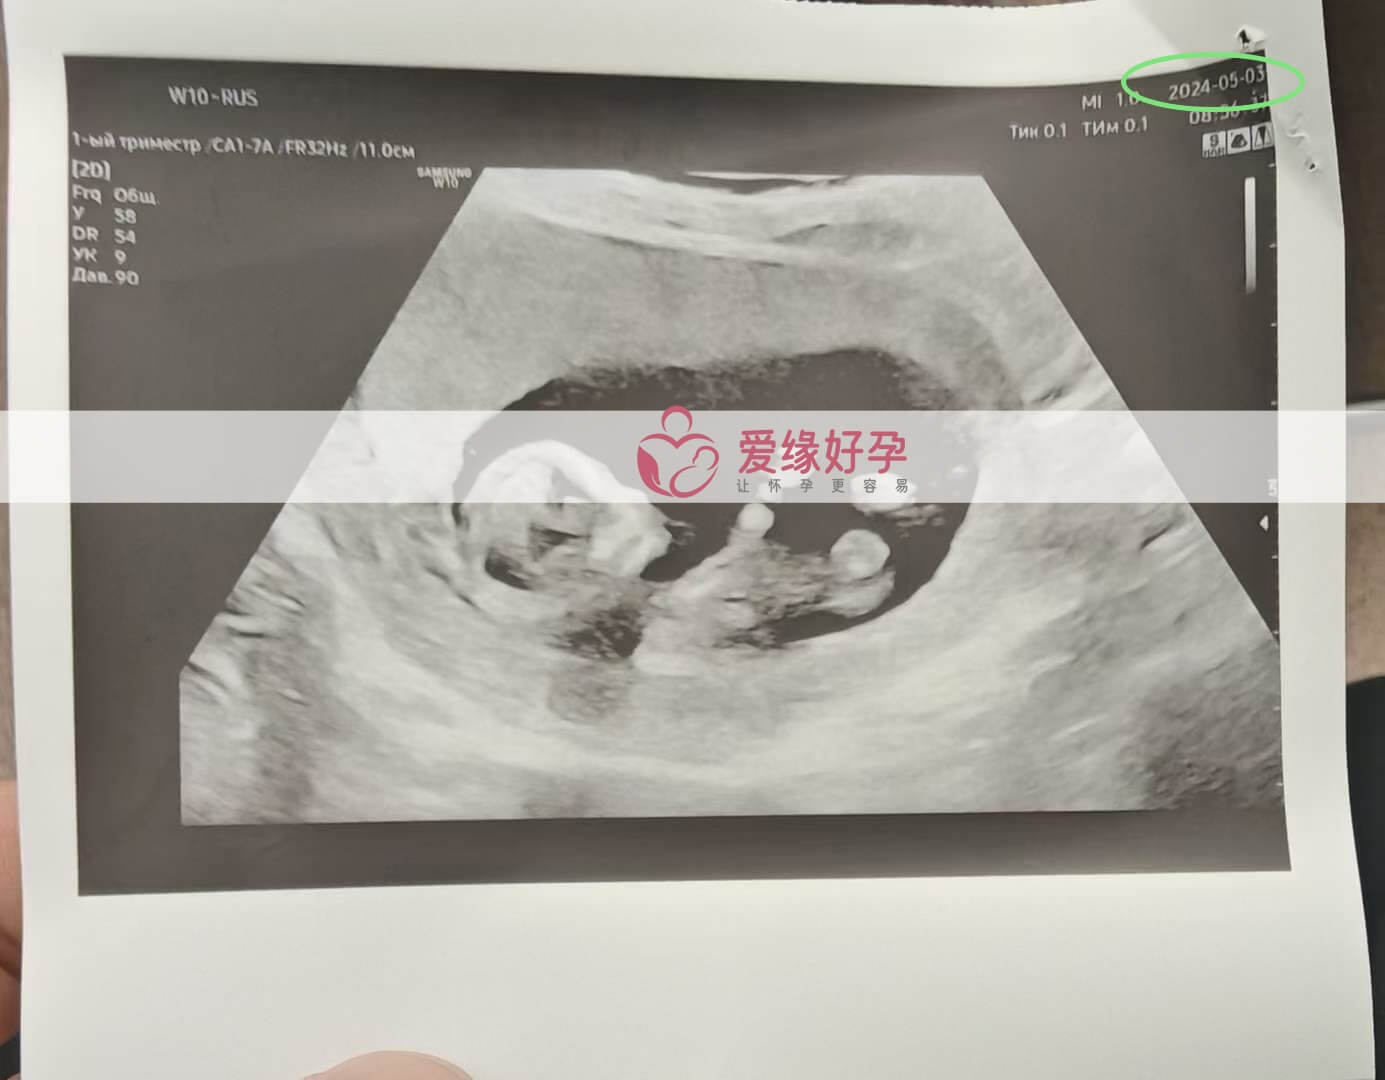 爱缘好孕:哈萨克斯坦爱心妈妈12周孕检顺利通过